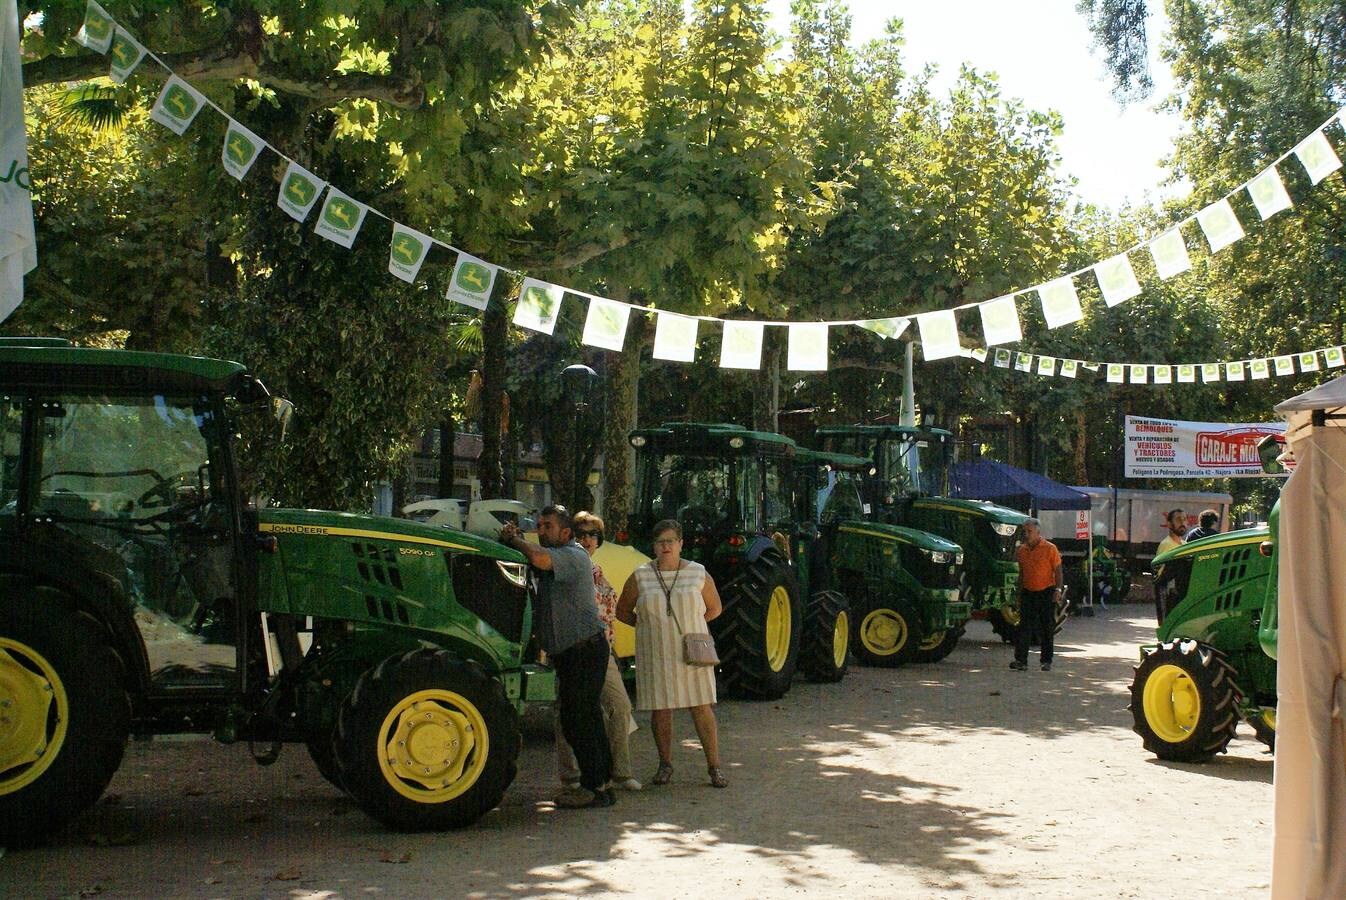 Este fin de semana se celebran las ferias de maquinaria agrícola, industrial y automoción. Además, se puede disfrutar del tradicional mercado artesanal